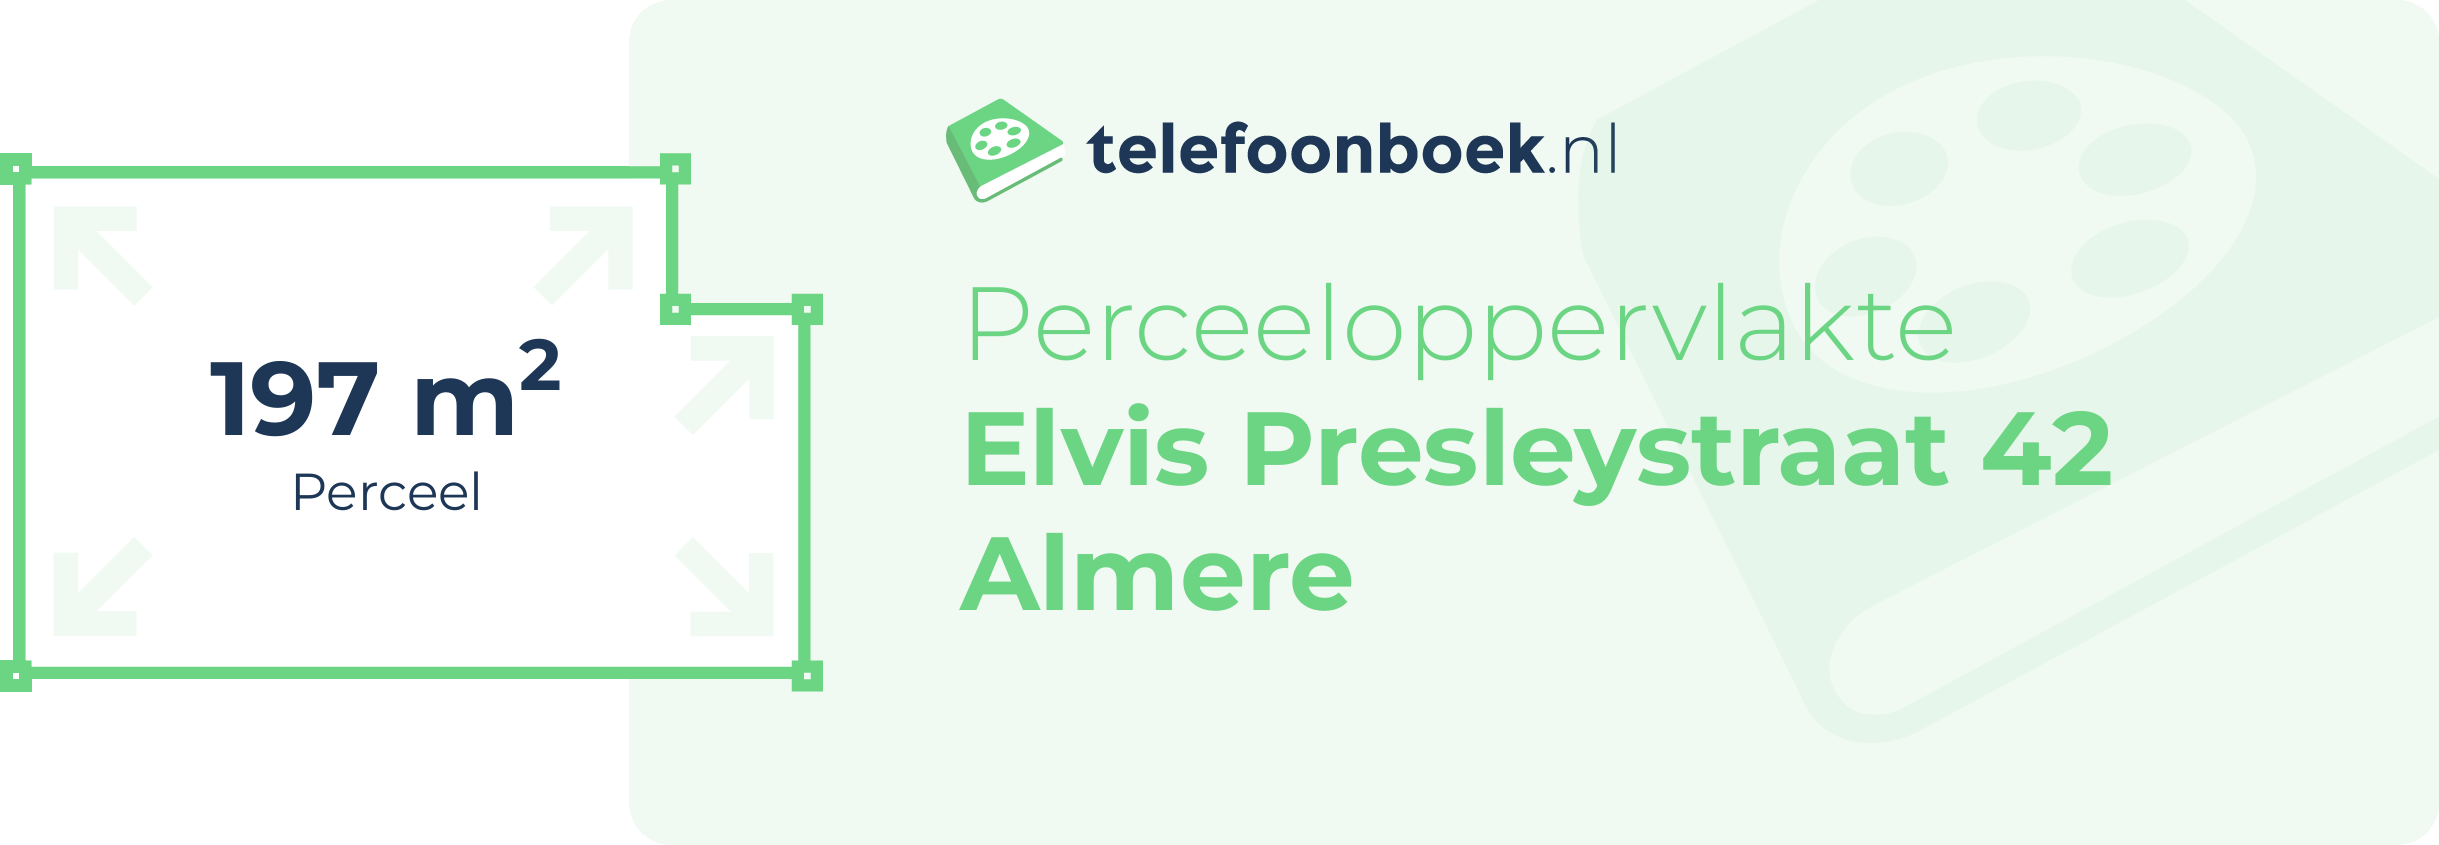 Perceeloppervlakte Elvis Presleystraat 42 Almere